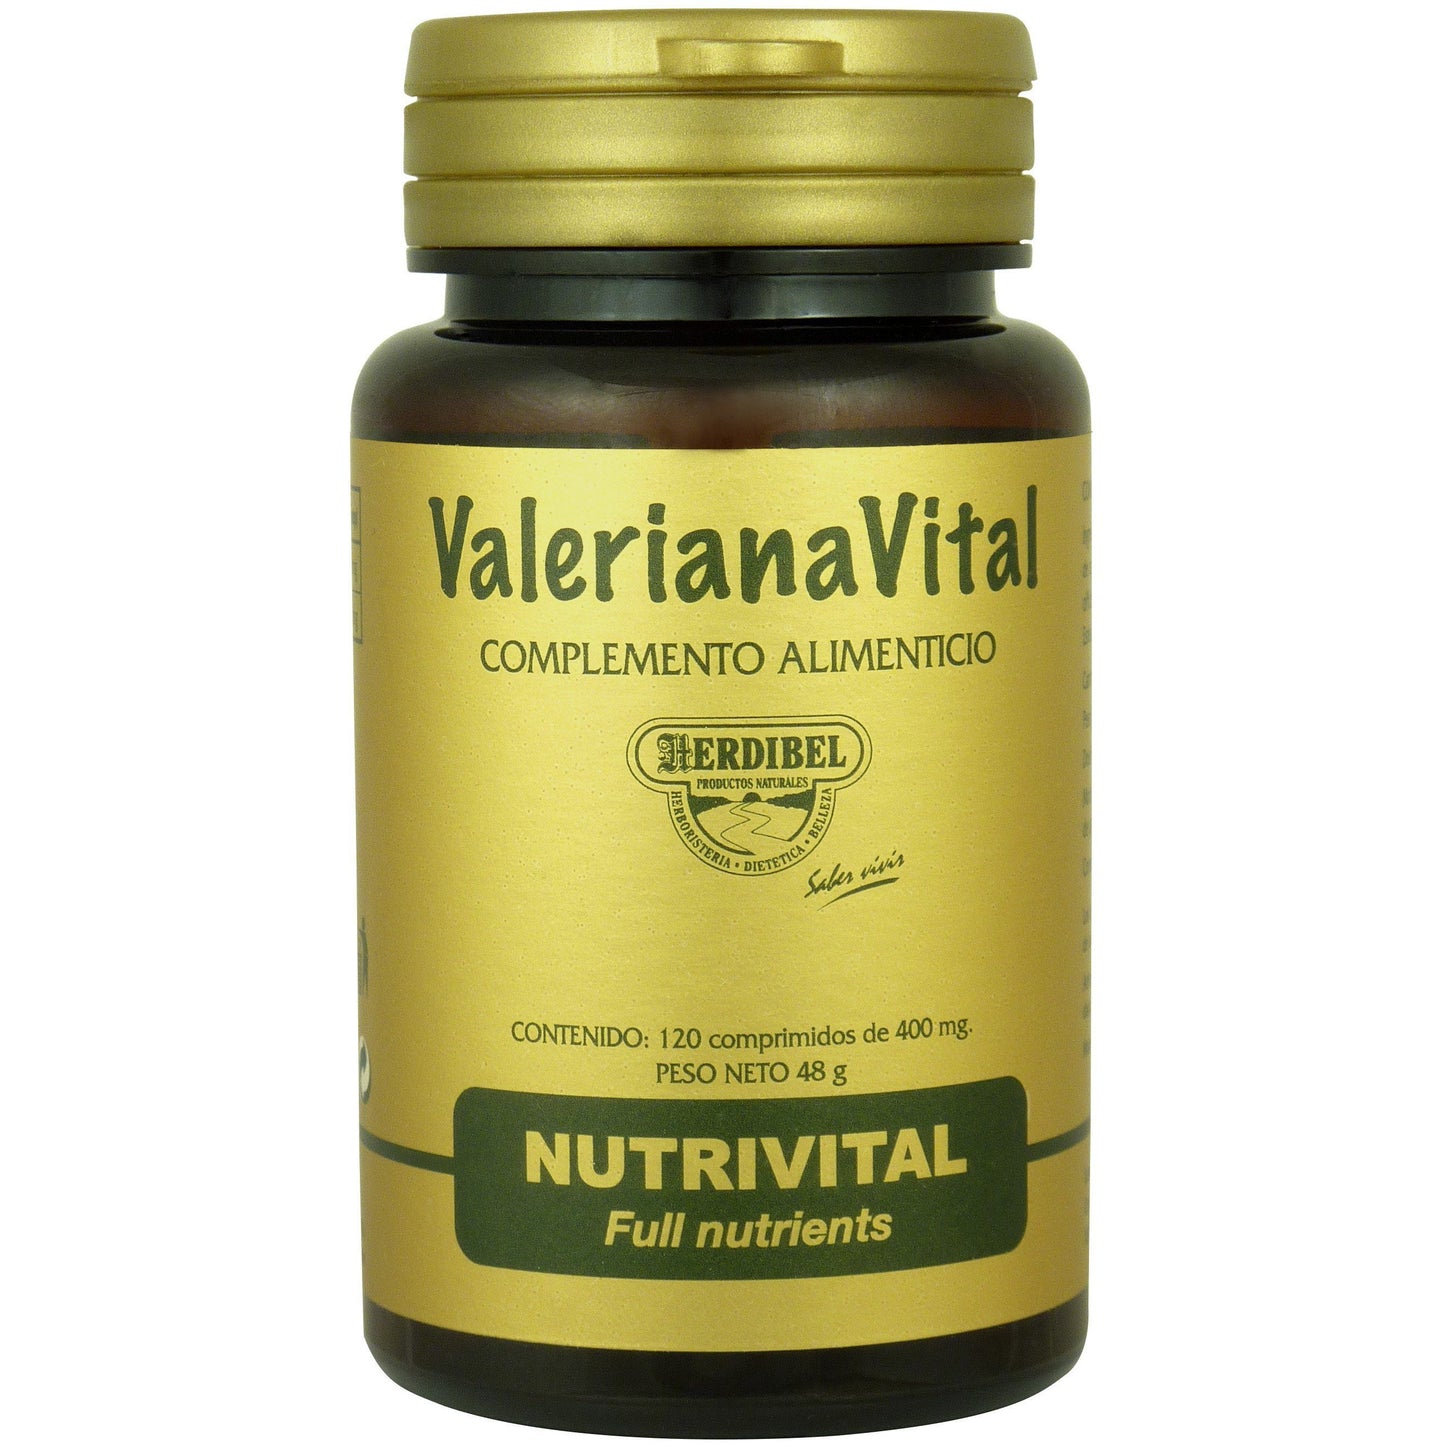 Valerianavital 120 Comprimidos | Herdibel - Dietetica Ferrer